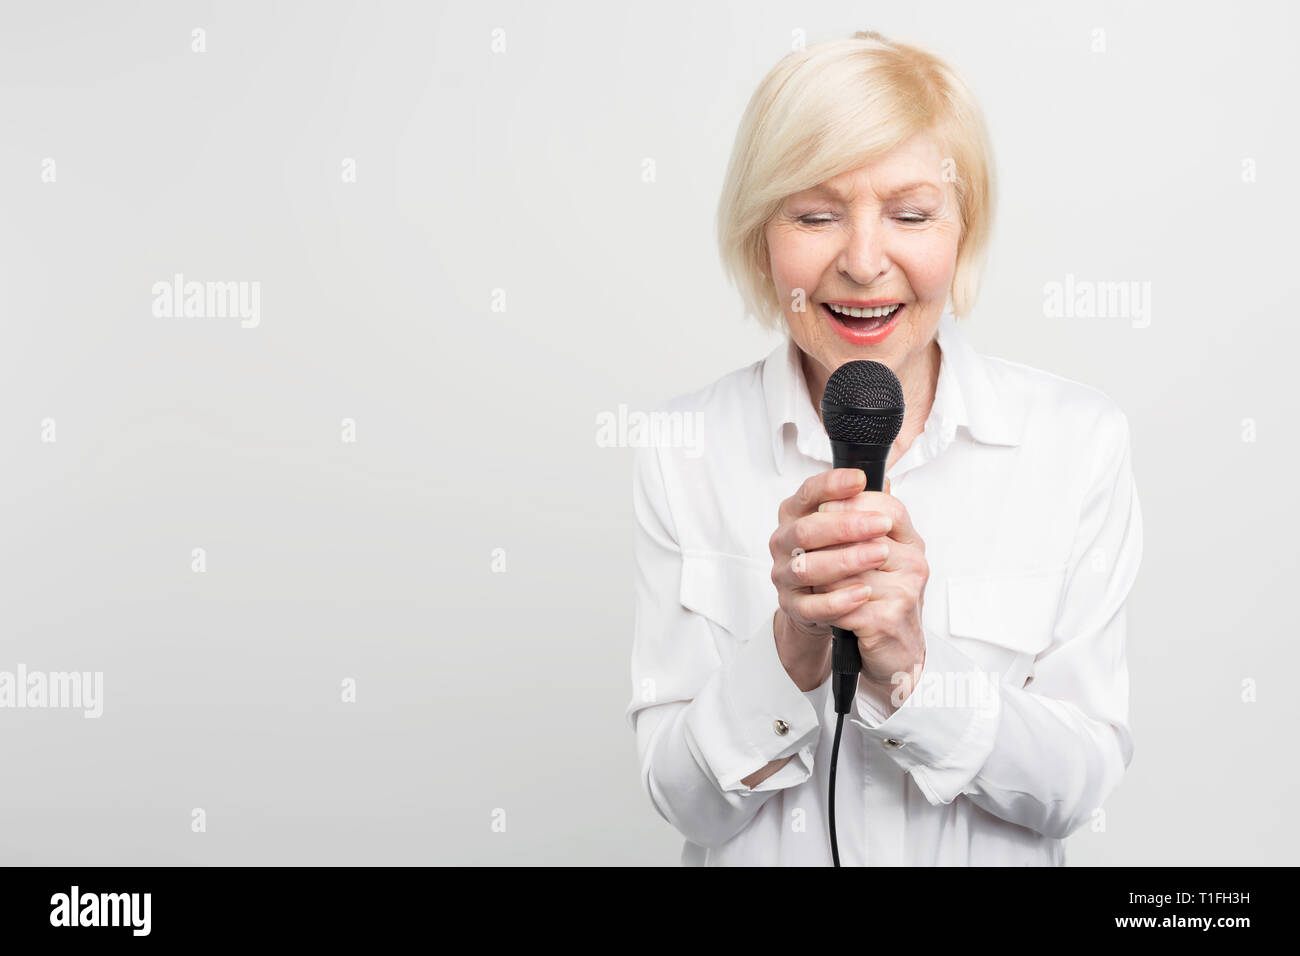 Belle et tendre photo de femme mature impressionnant chanter une chanson avec ses yeux fermés à l'aide d'un microphone. Isolé sur fond blanc. Banque D'Images